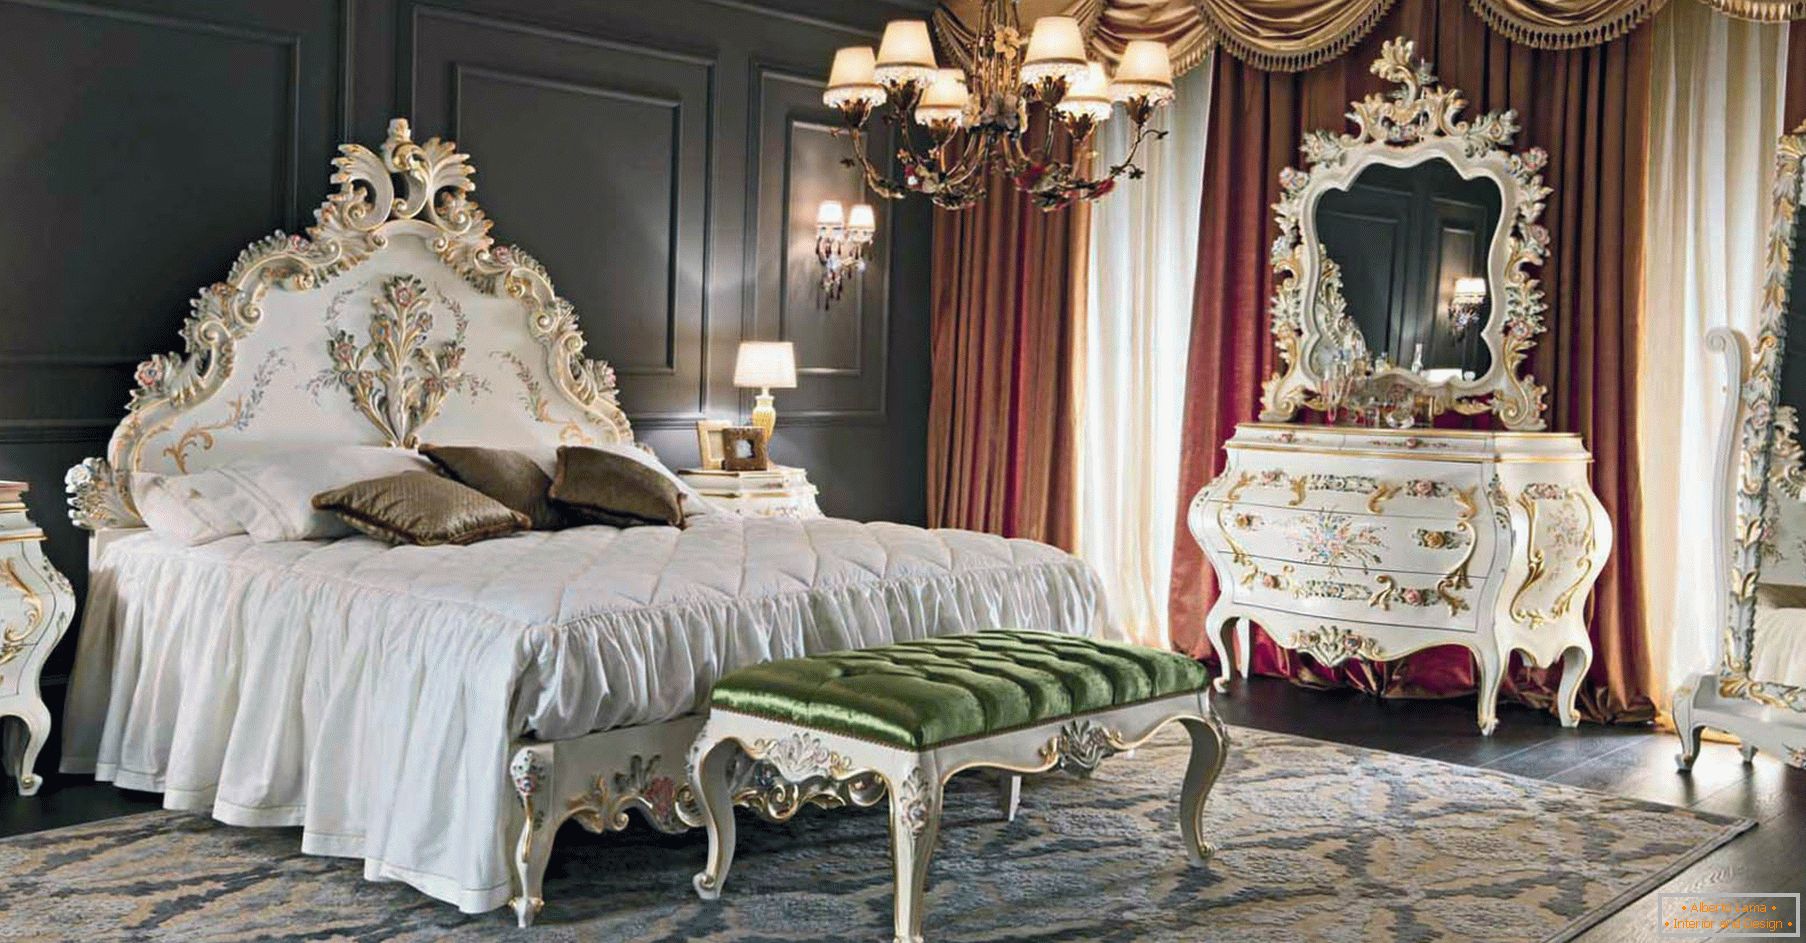 Um das Schlafzimmer zu dekorieren, wurde ein Kontrast aus dunkelbraunen, goldenen, roten und weißen Farben verwendet. Die Möbel sind nach dem Stil des Barocks ausgewählt.